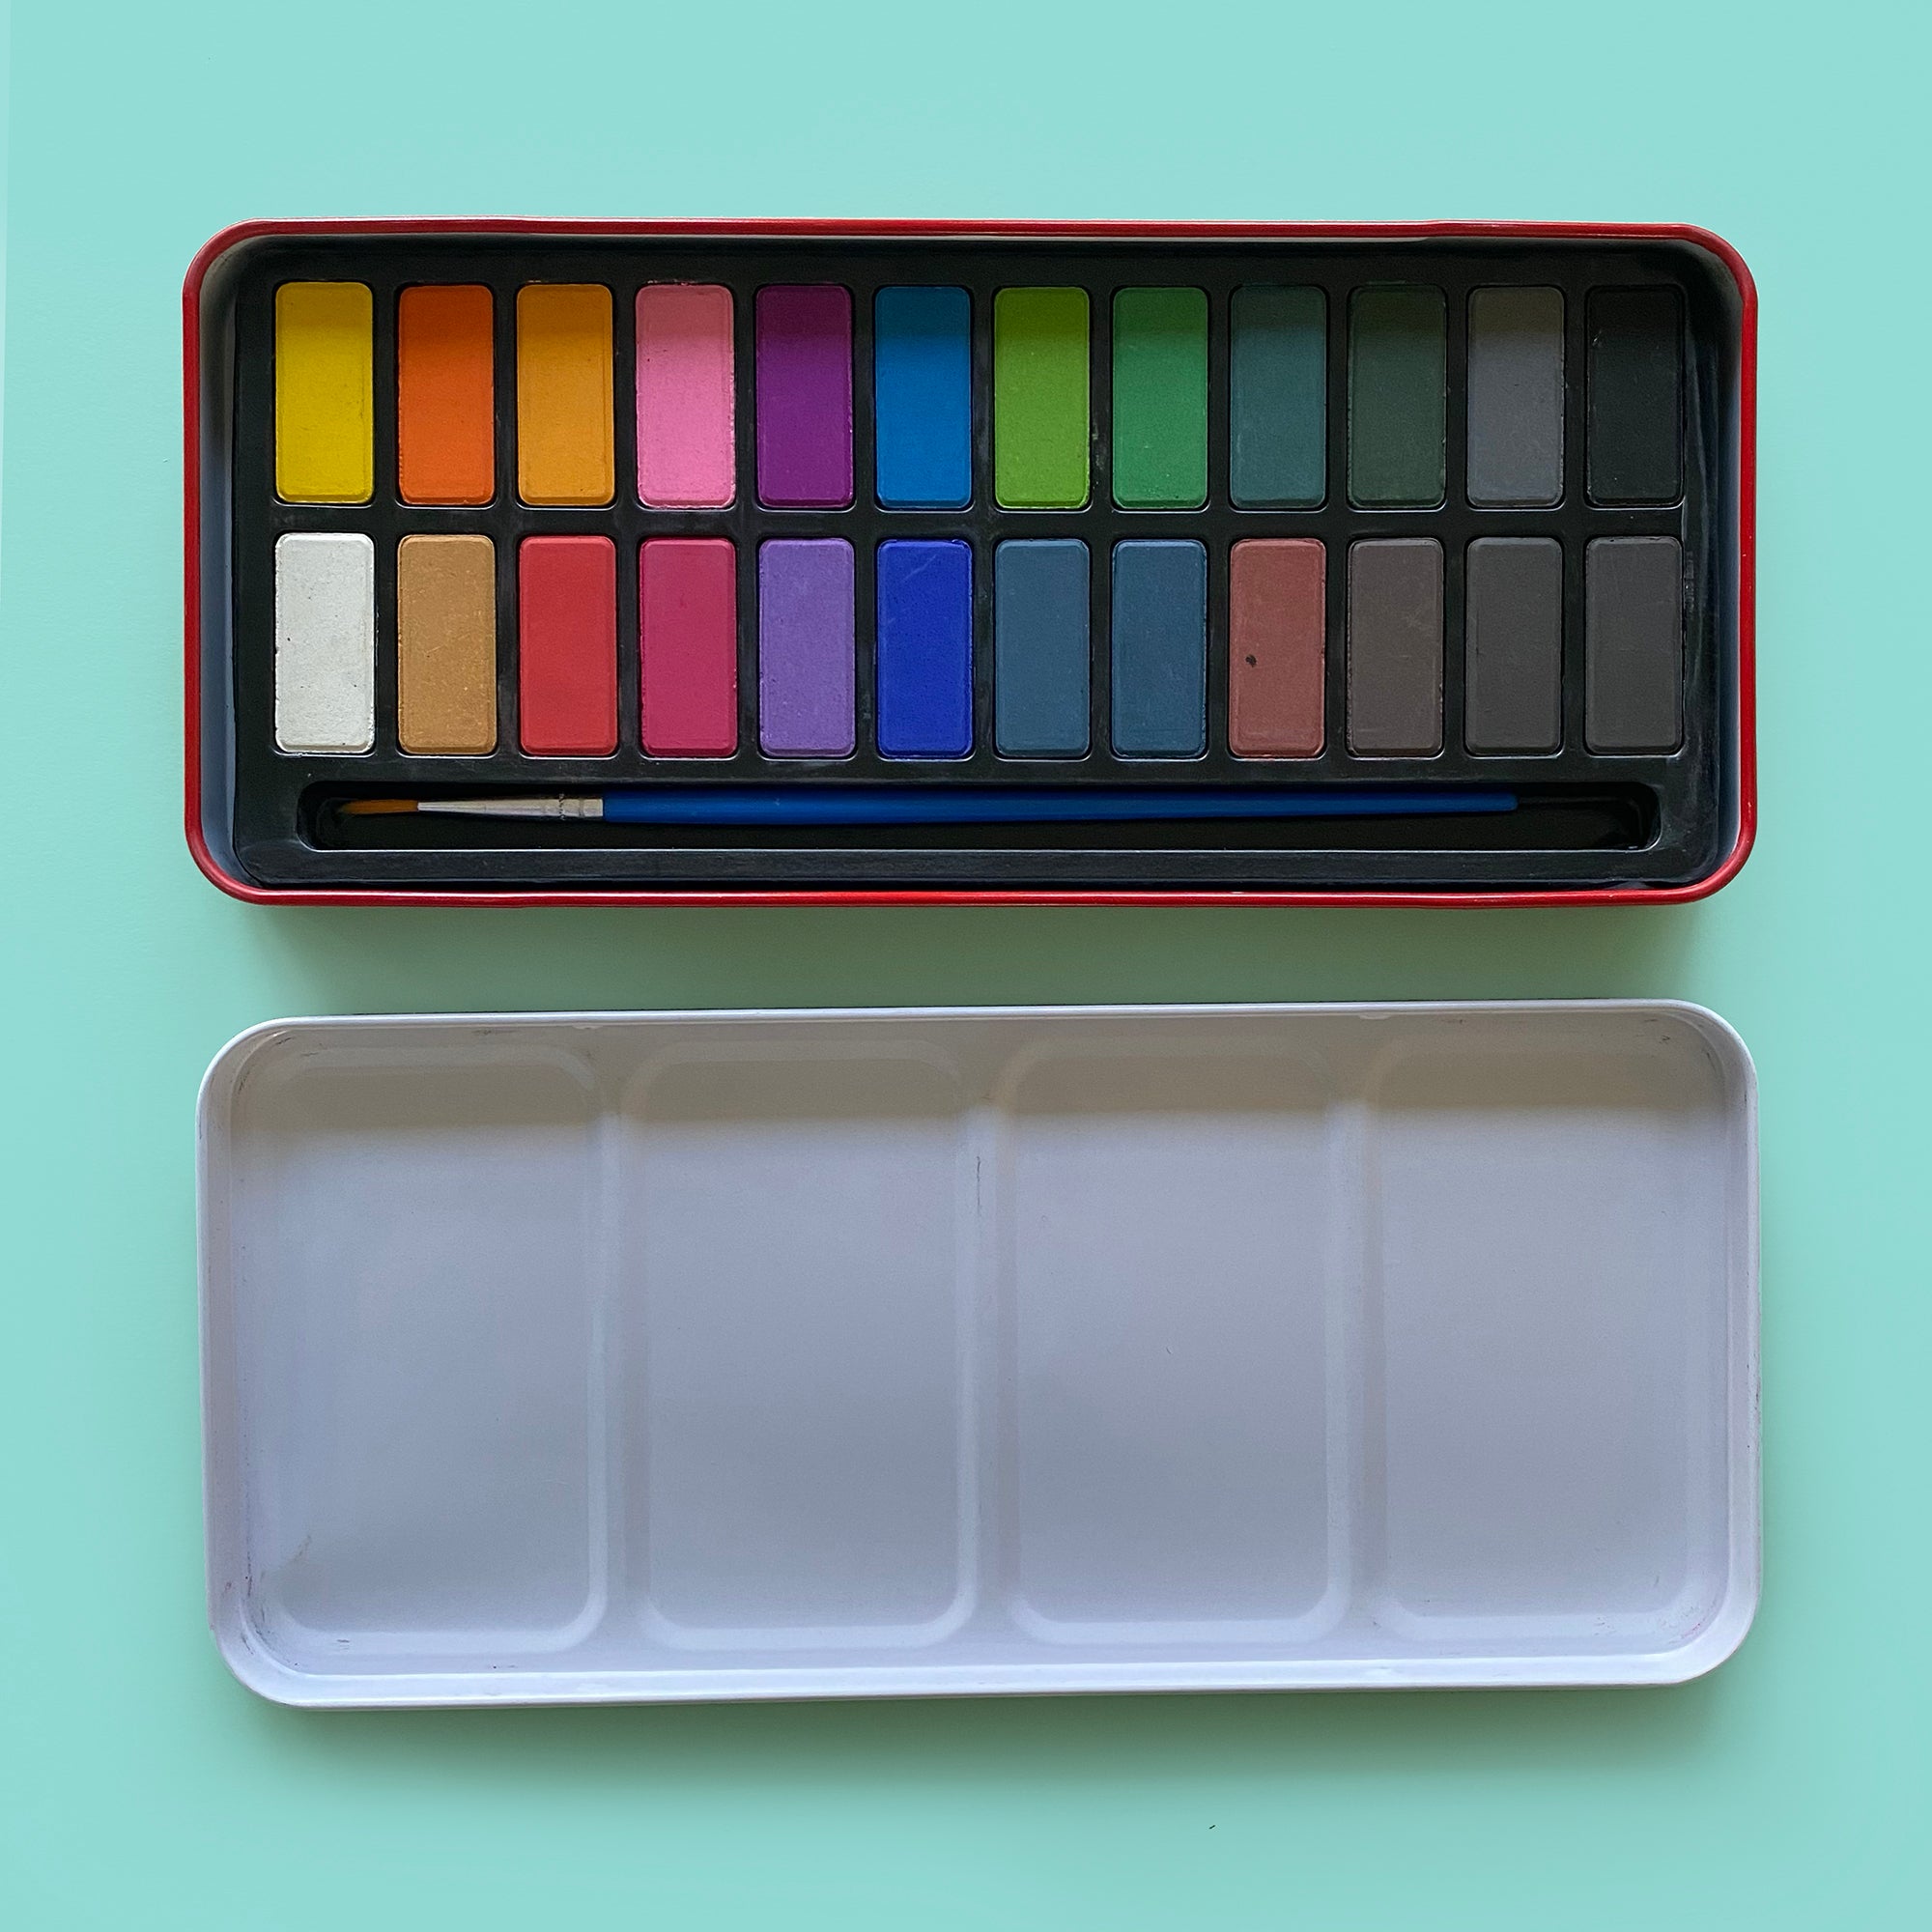 BASICS - 24 Colour Watercolour Paint Set in Metal Case